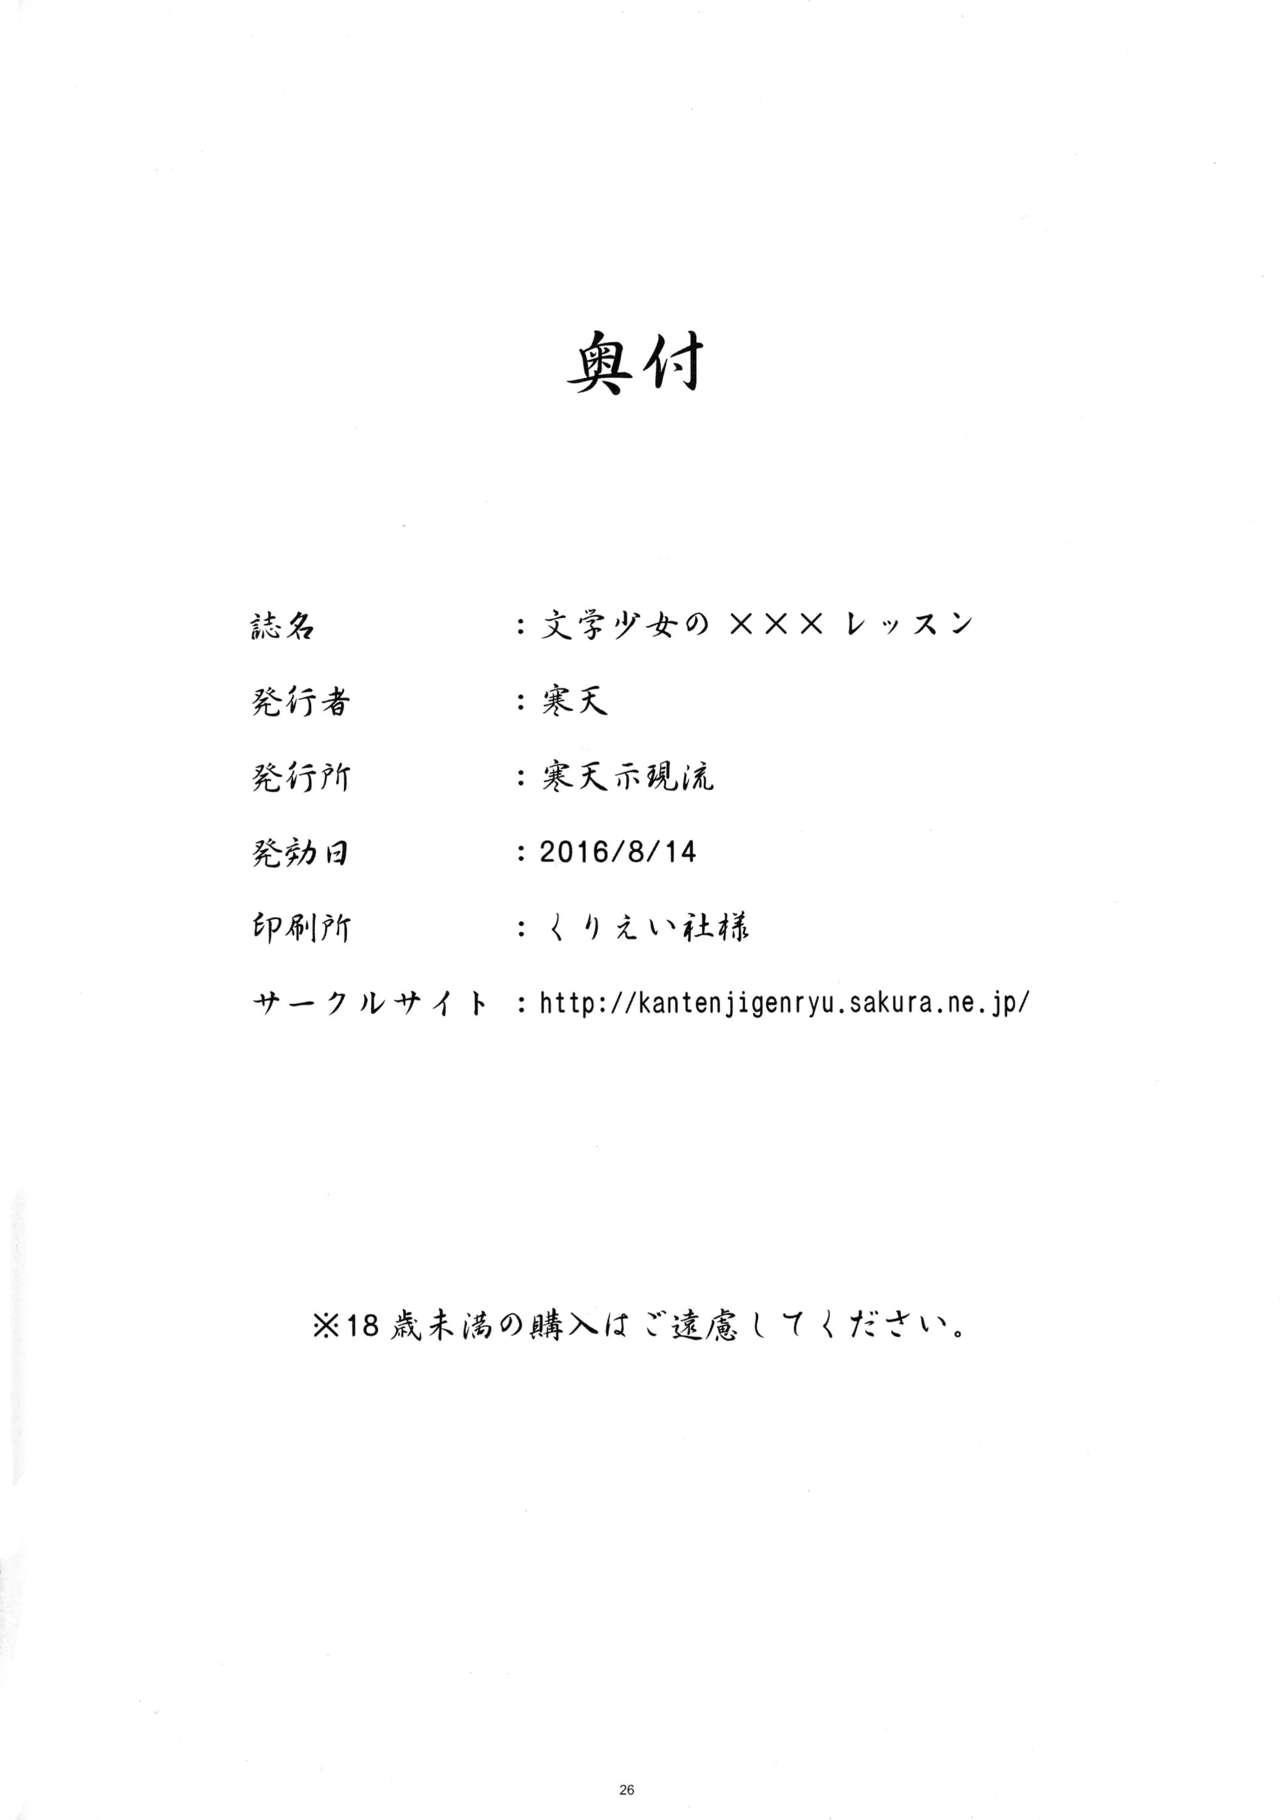 Bungaku Shoujo no ××× Lesson 25